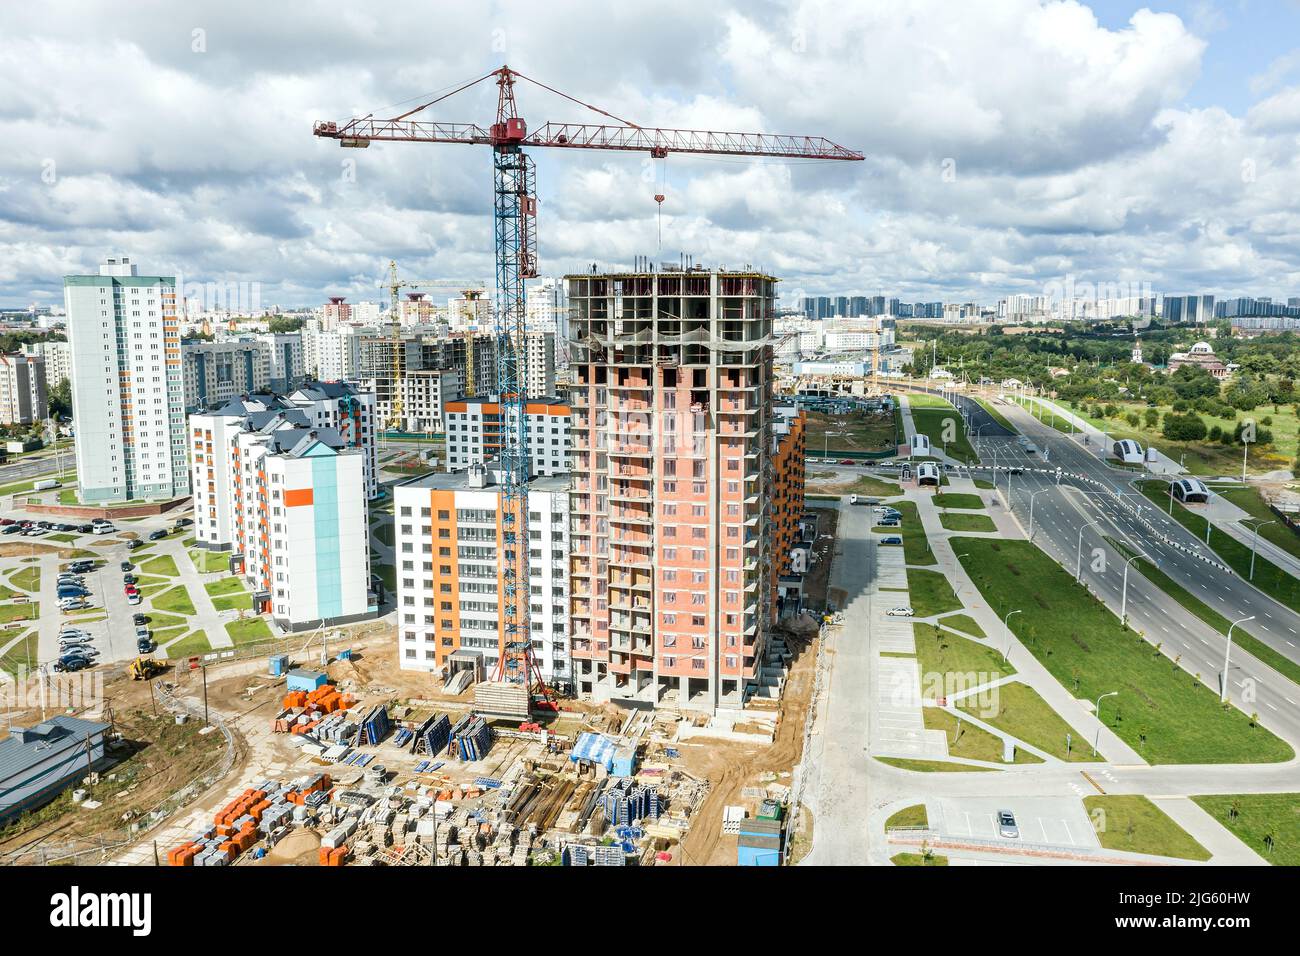 obra de construcción con edificio de apartamentos de gran altura y grúas sobre fondo de cielo nublado. fotografía aérea. Foto de stock